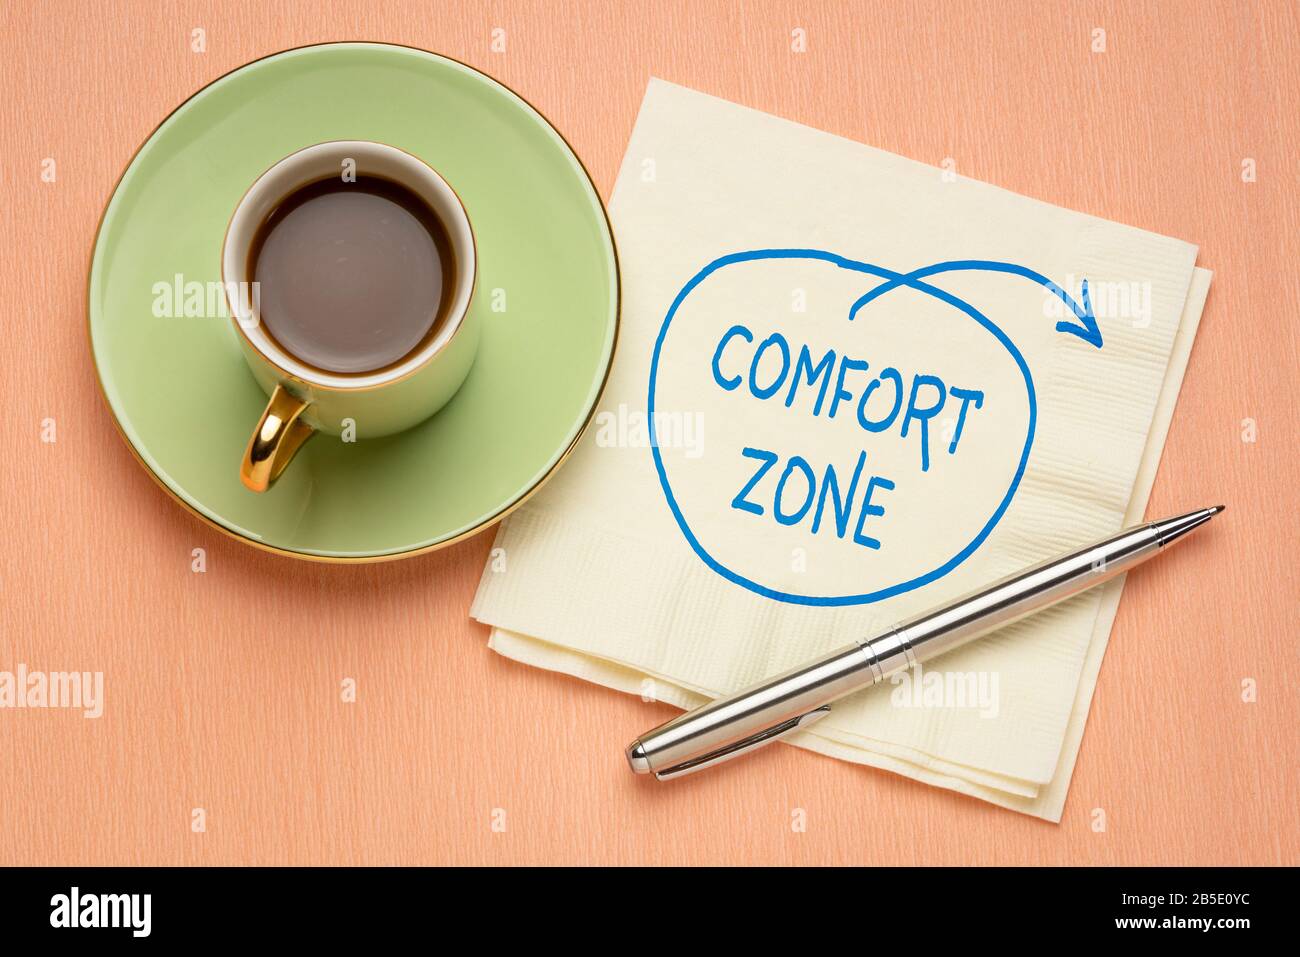 step out of comfort zone concept - un doodle motivazionale su un tovagliolo con una tazza di caffè, sfida, motivazione e sviluppo personale Foto Stock